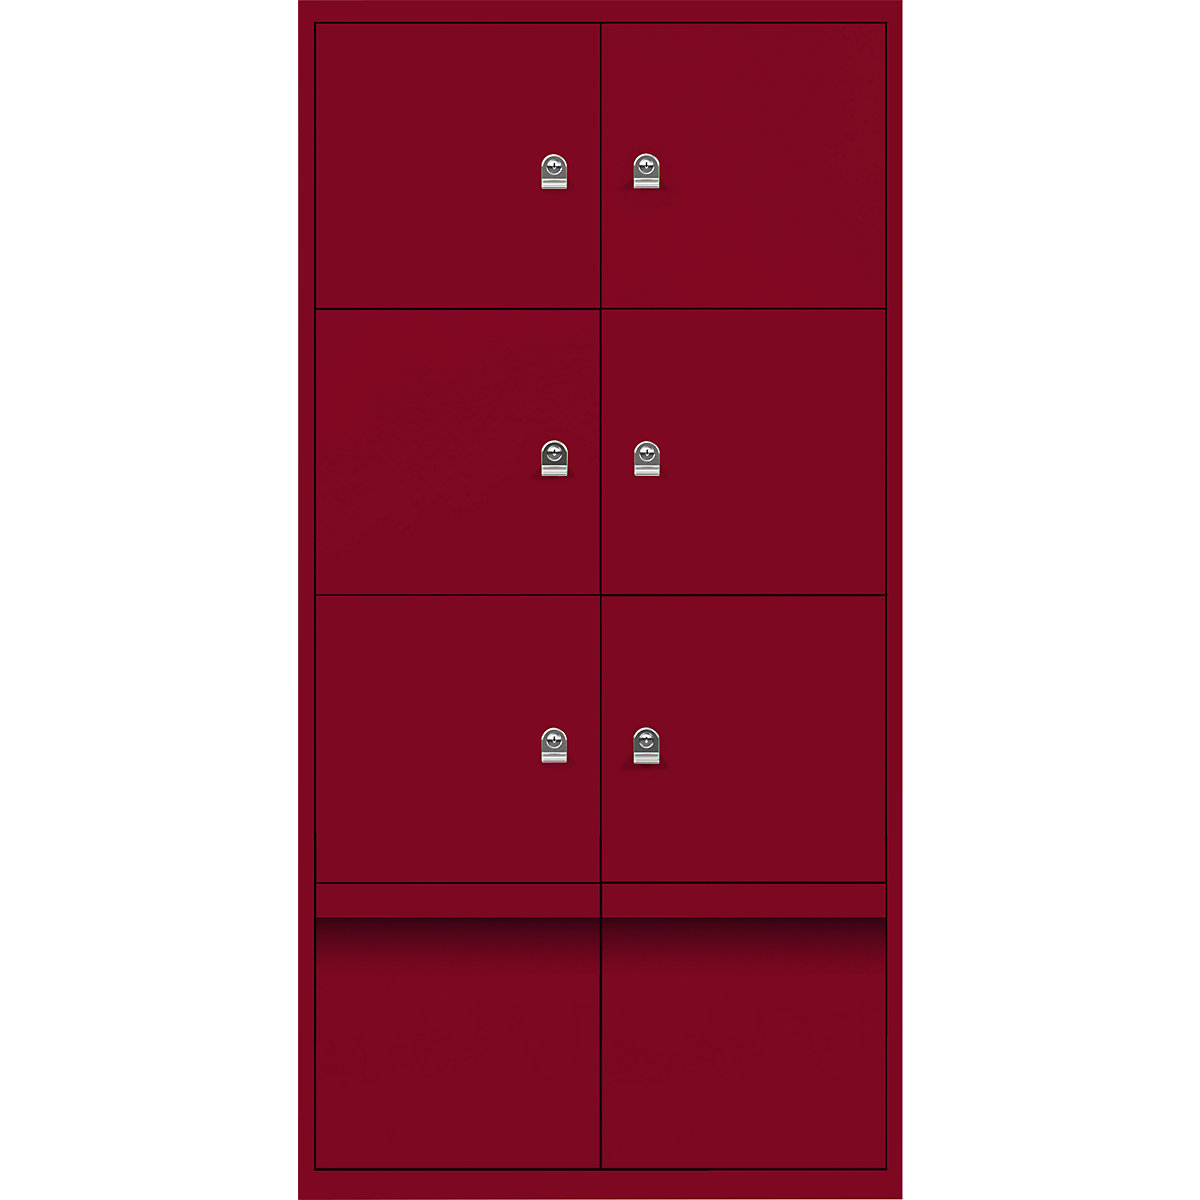 Omara s predelki z zaklepanjem LateralFile™ – BISLEY, 6 predelkov z zaklepanjem in 2 predala, višina po 375 mm, kardinalsko rdeče barve-27